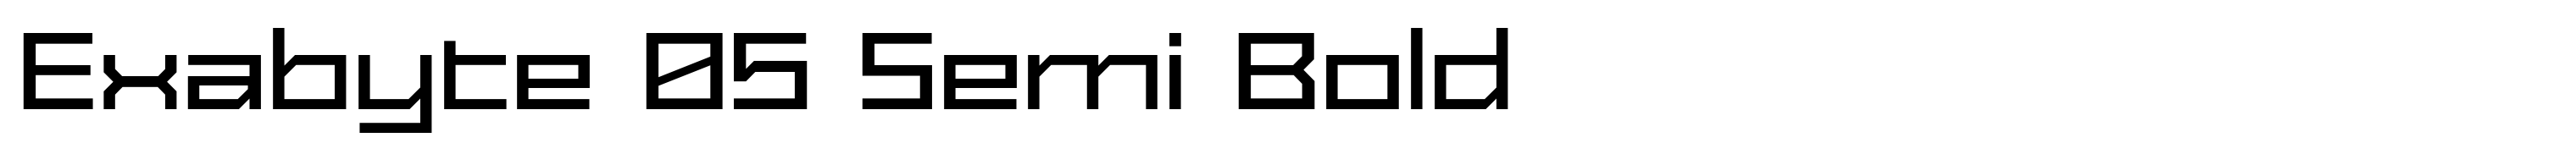 Exabyte 05 Semi Bold